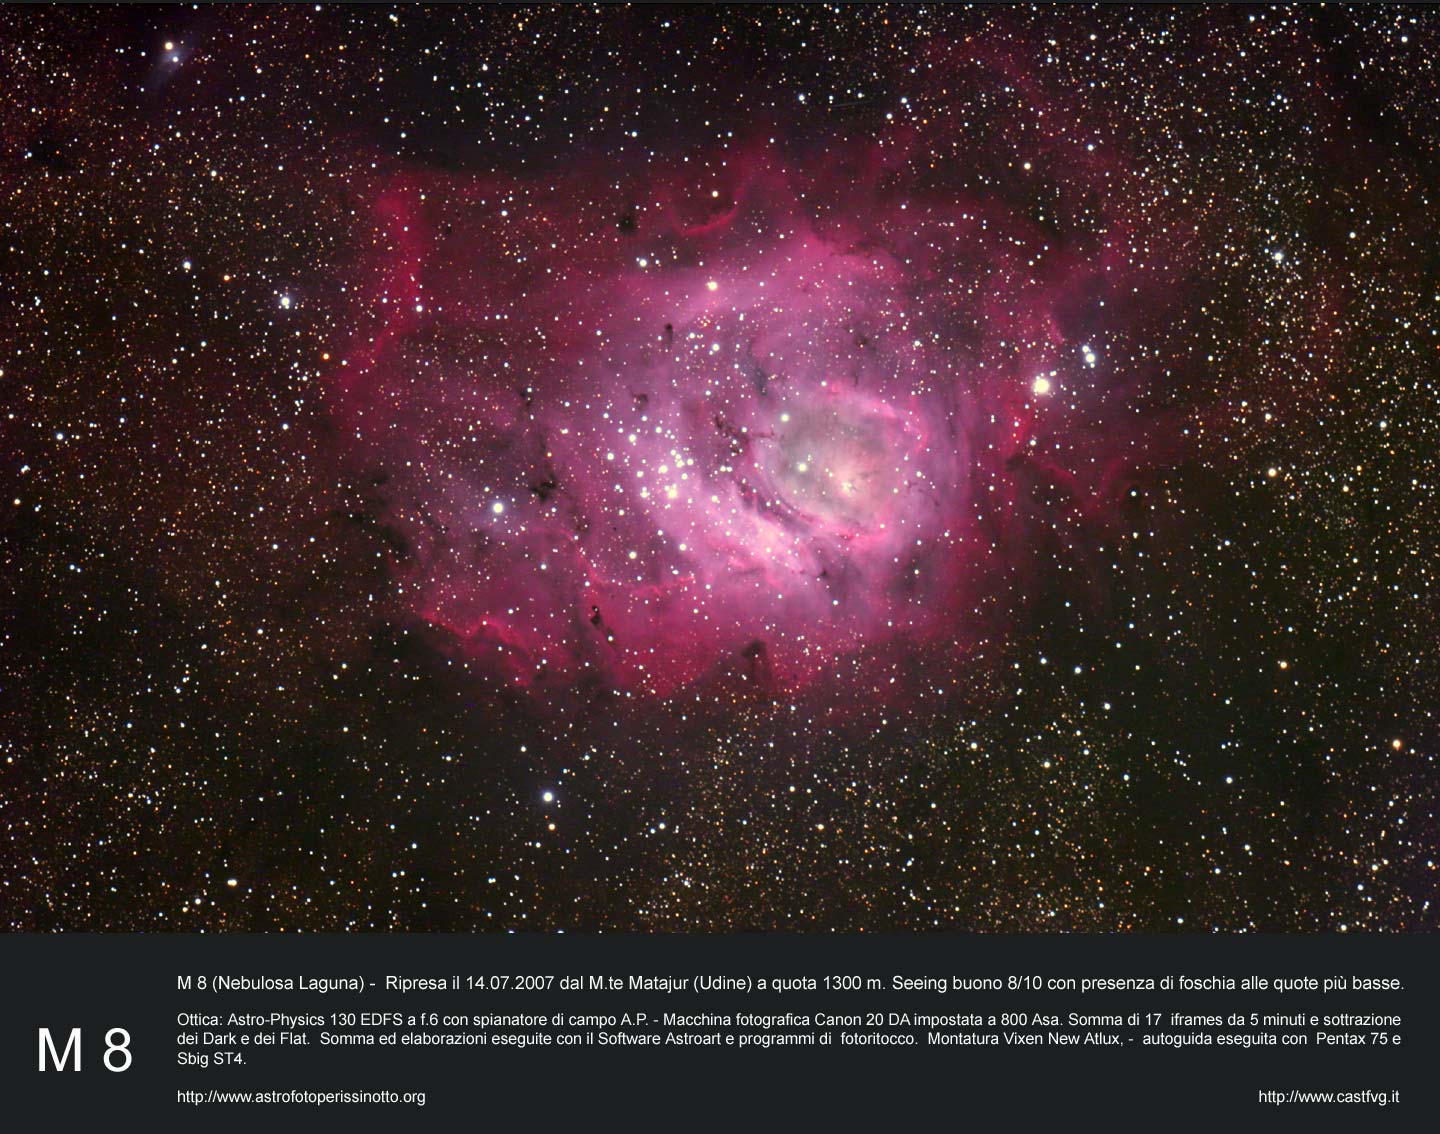 Laguna Nebula: 260 KB; click on the image to enlarge